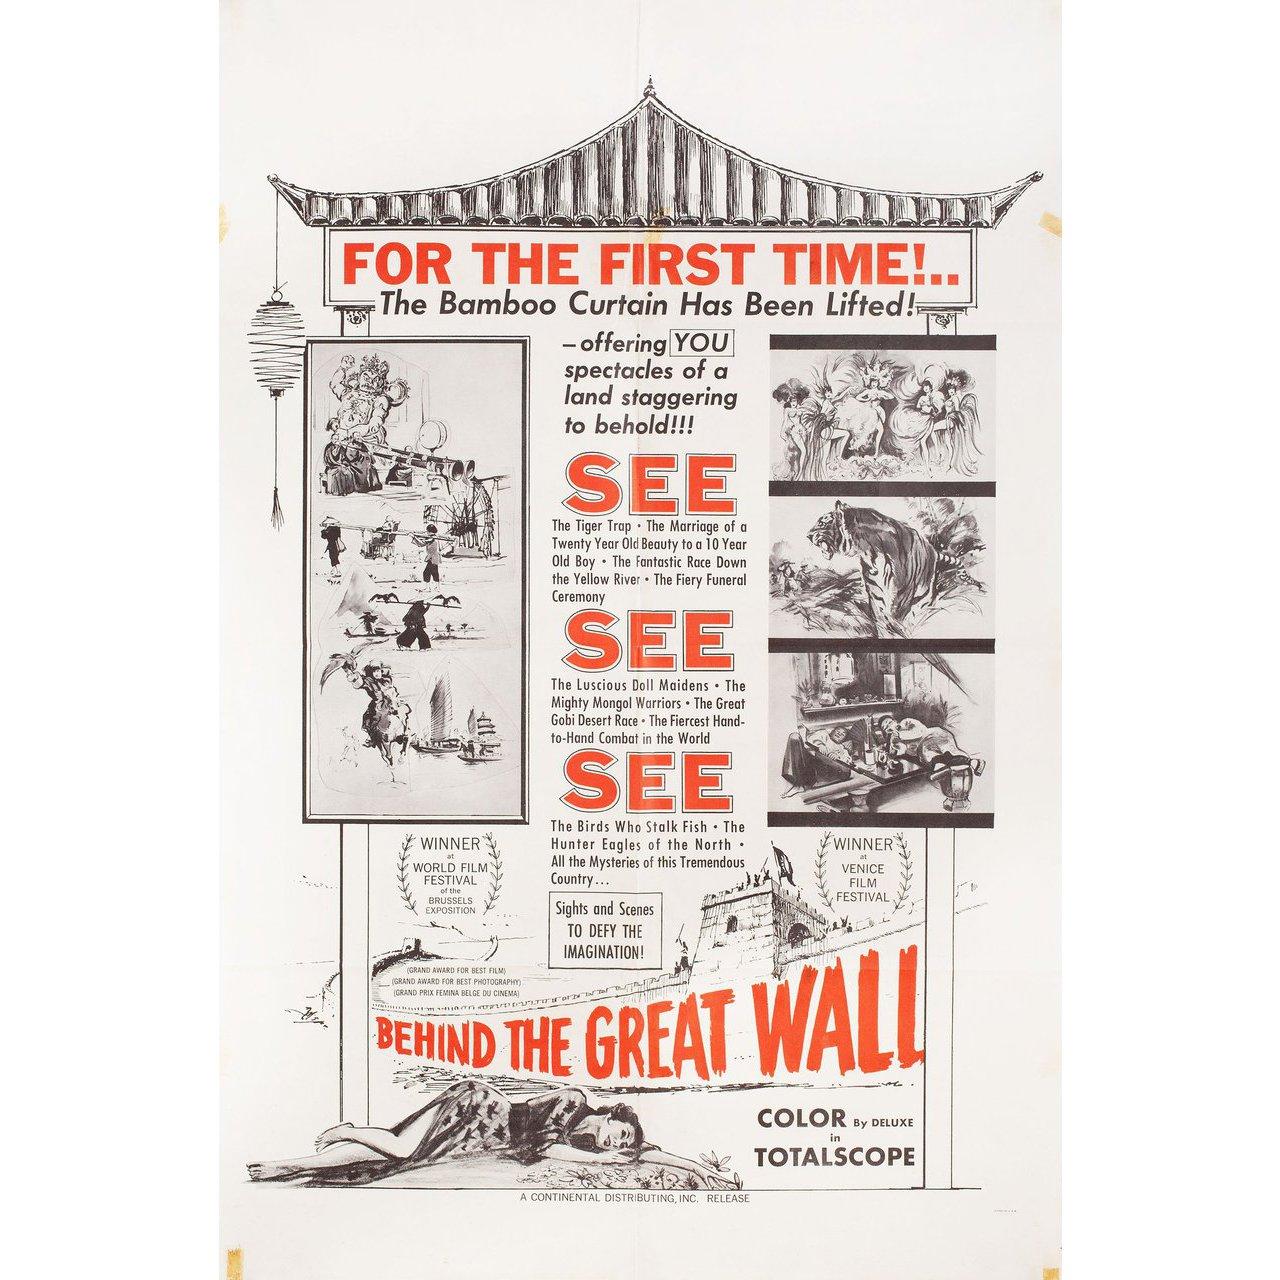 Originales US-Plakat von 1958 für den Dokumentarfilm 